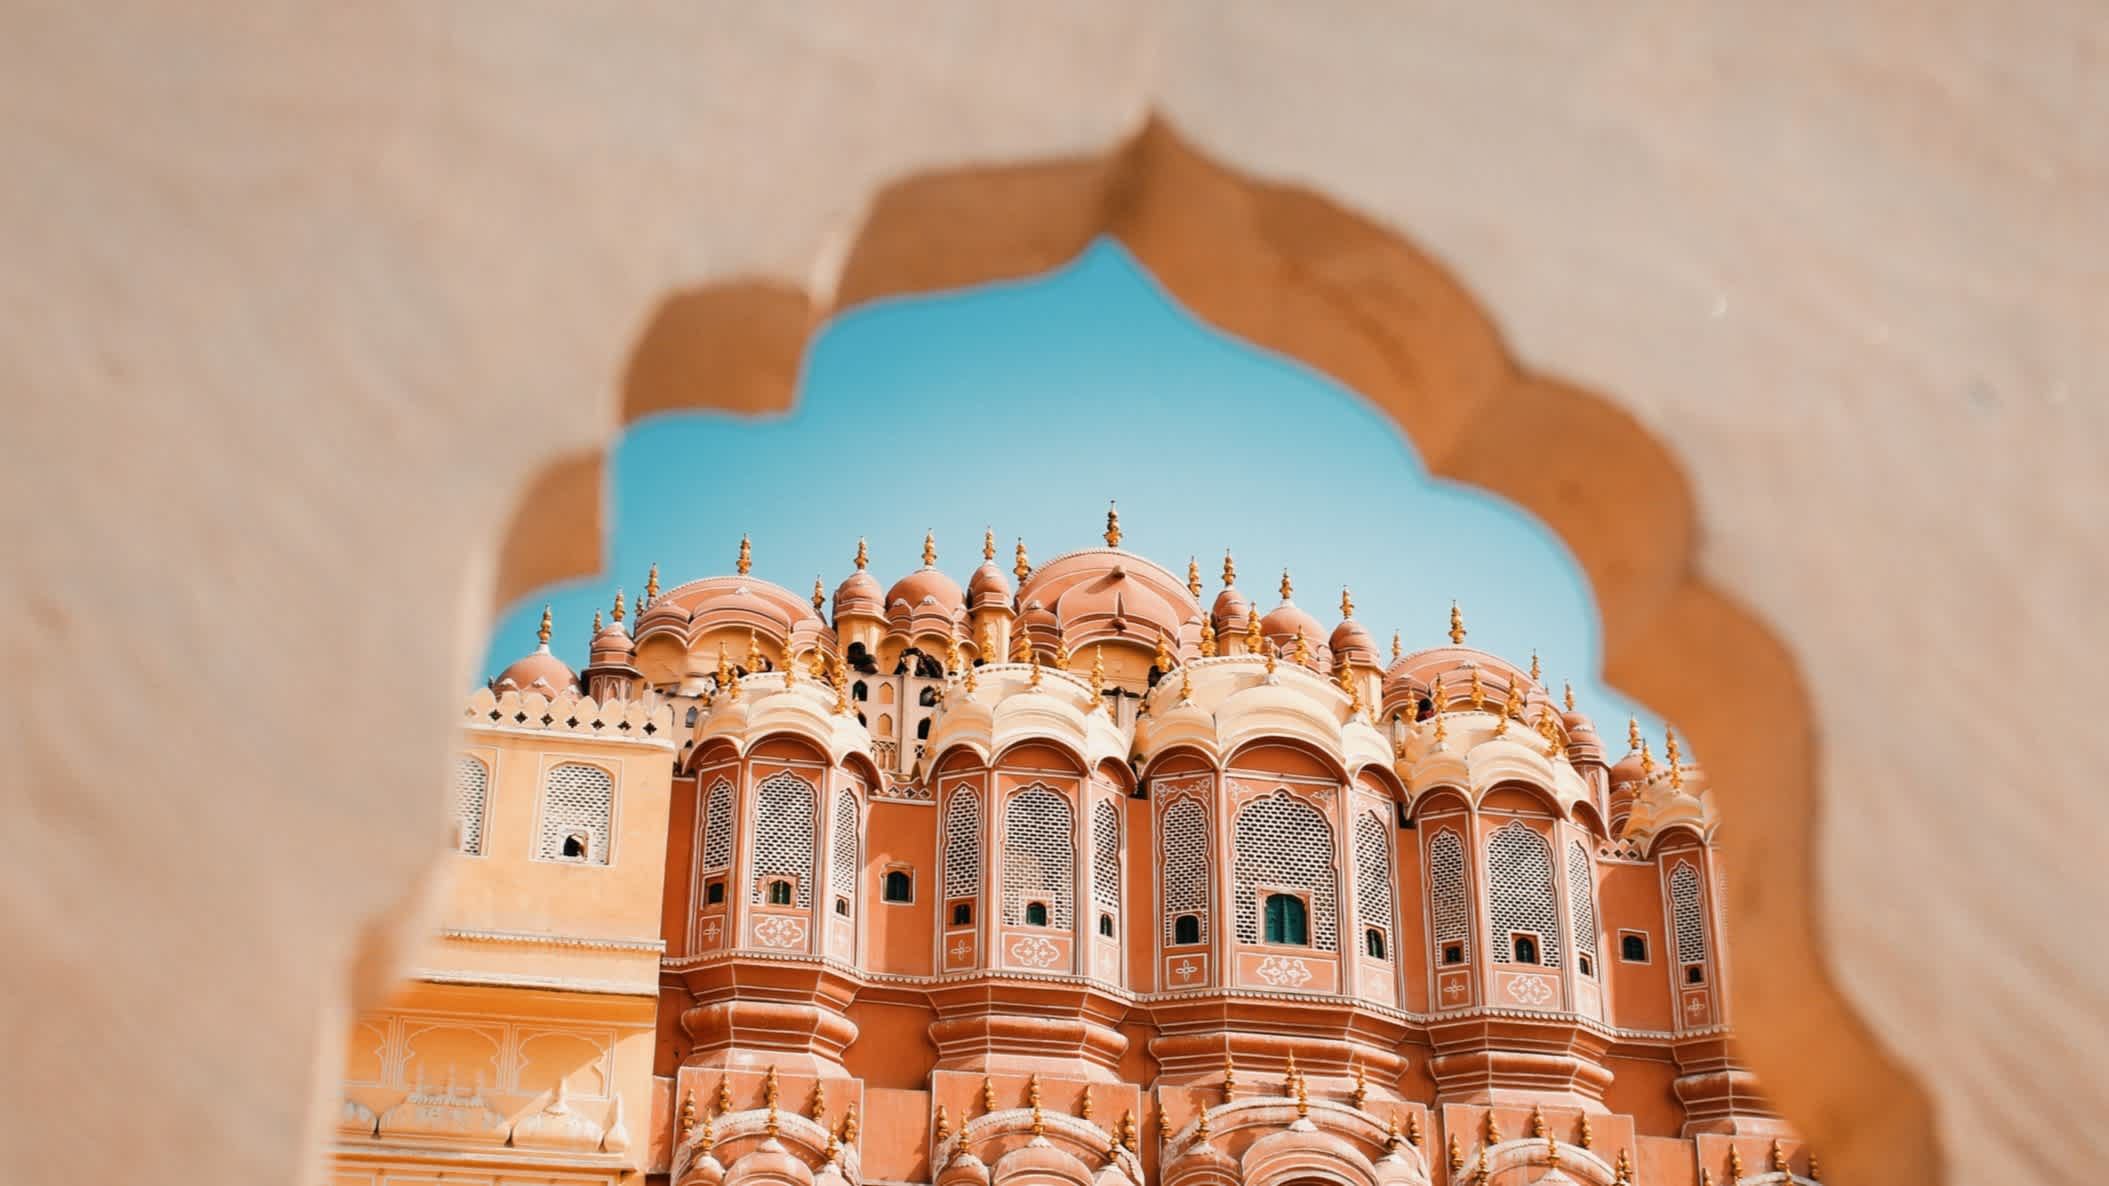 Innenseite der Hawa Mahal (Palast der Winde) in Jaipur, Indien.